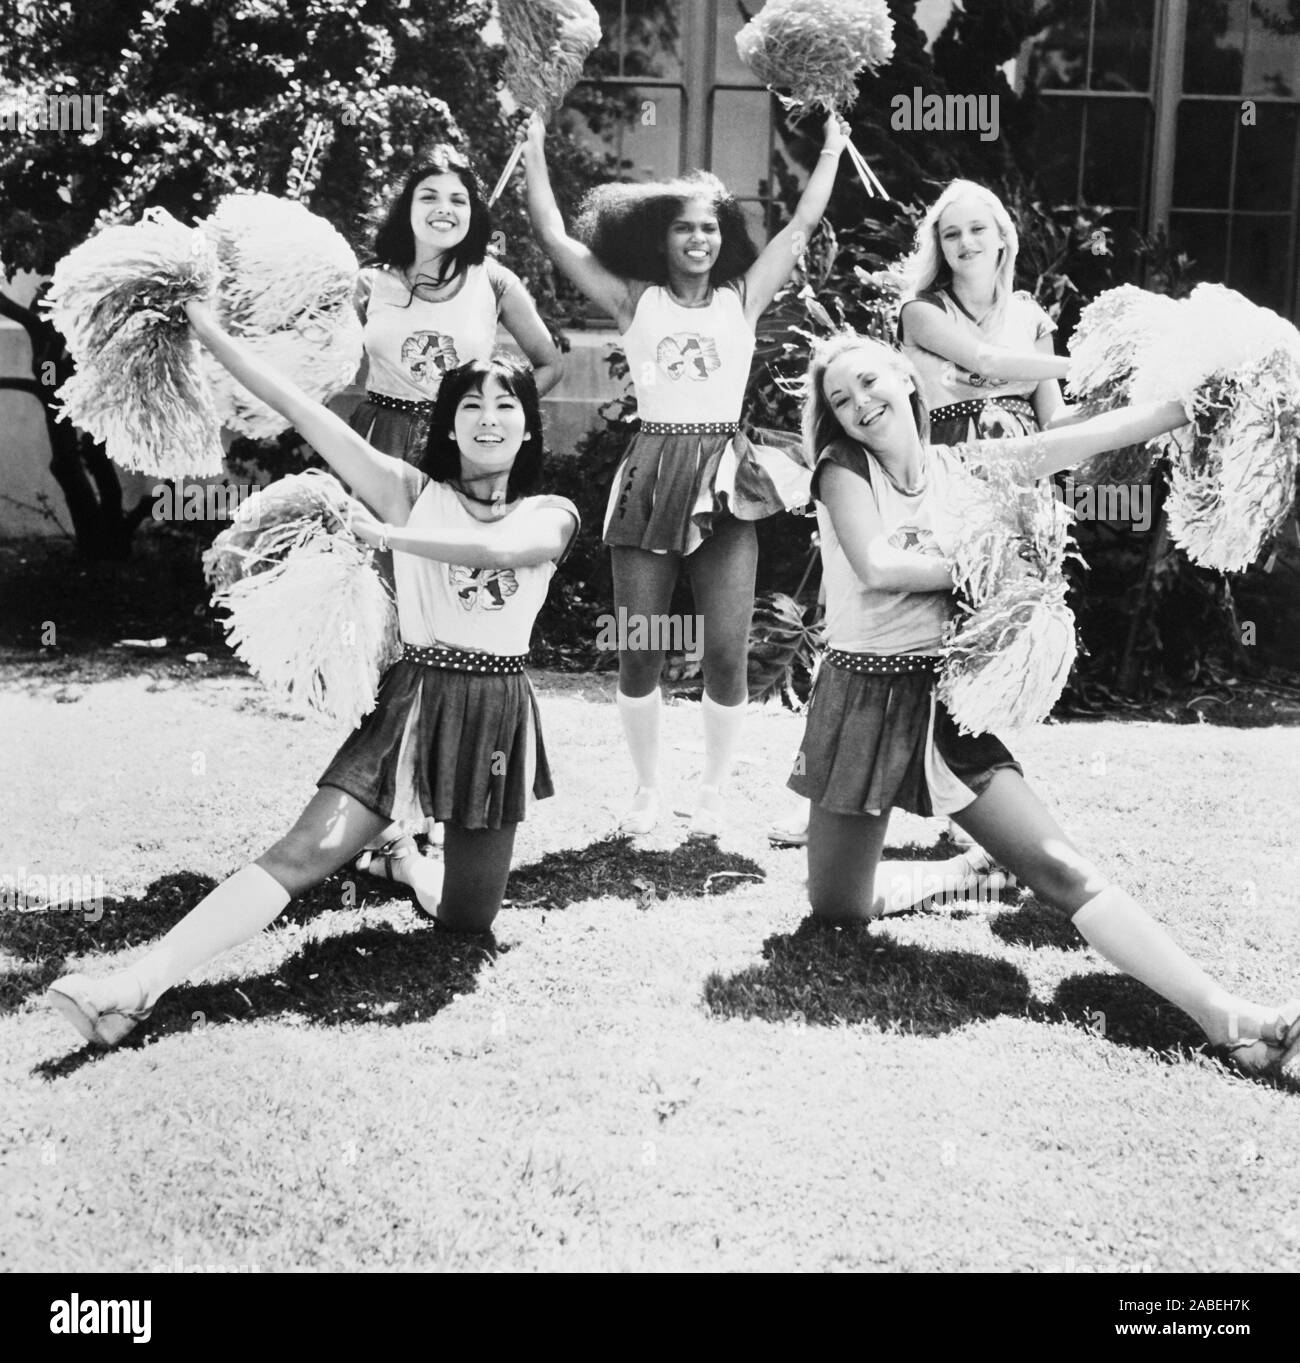 La venganza de los hinchas, desde la izquierda: Helen Lang (arriba), Susie Elene, Jerii Woods, Patrice Rohmer (delantero), Cheryl Smith, 1976 Foto de stock